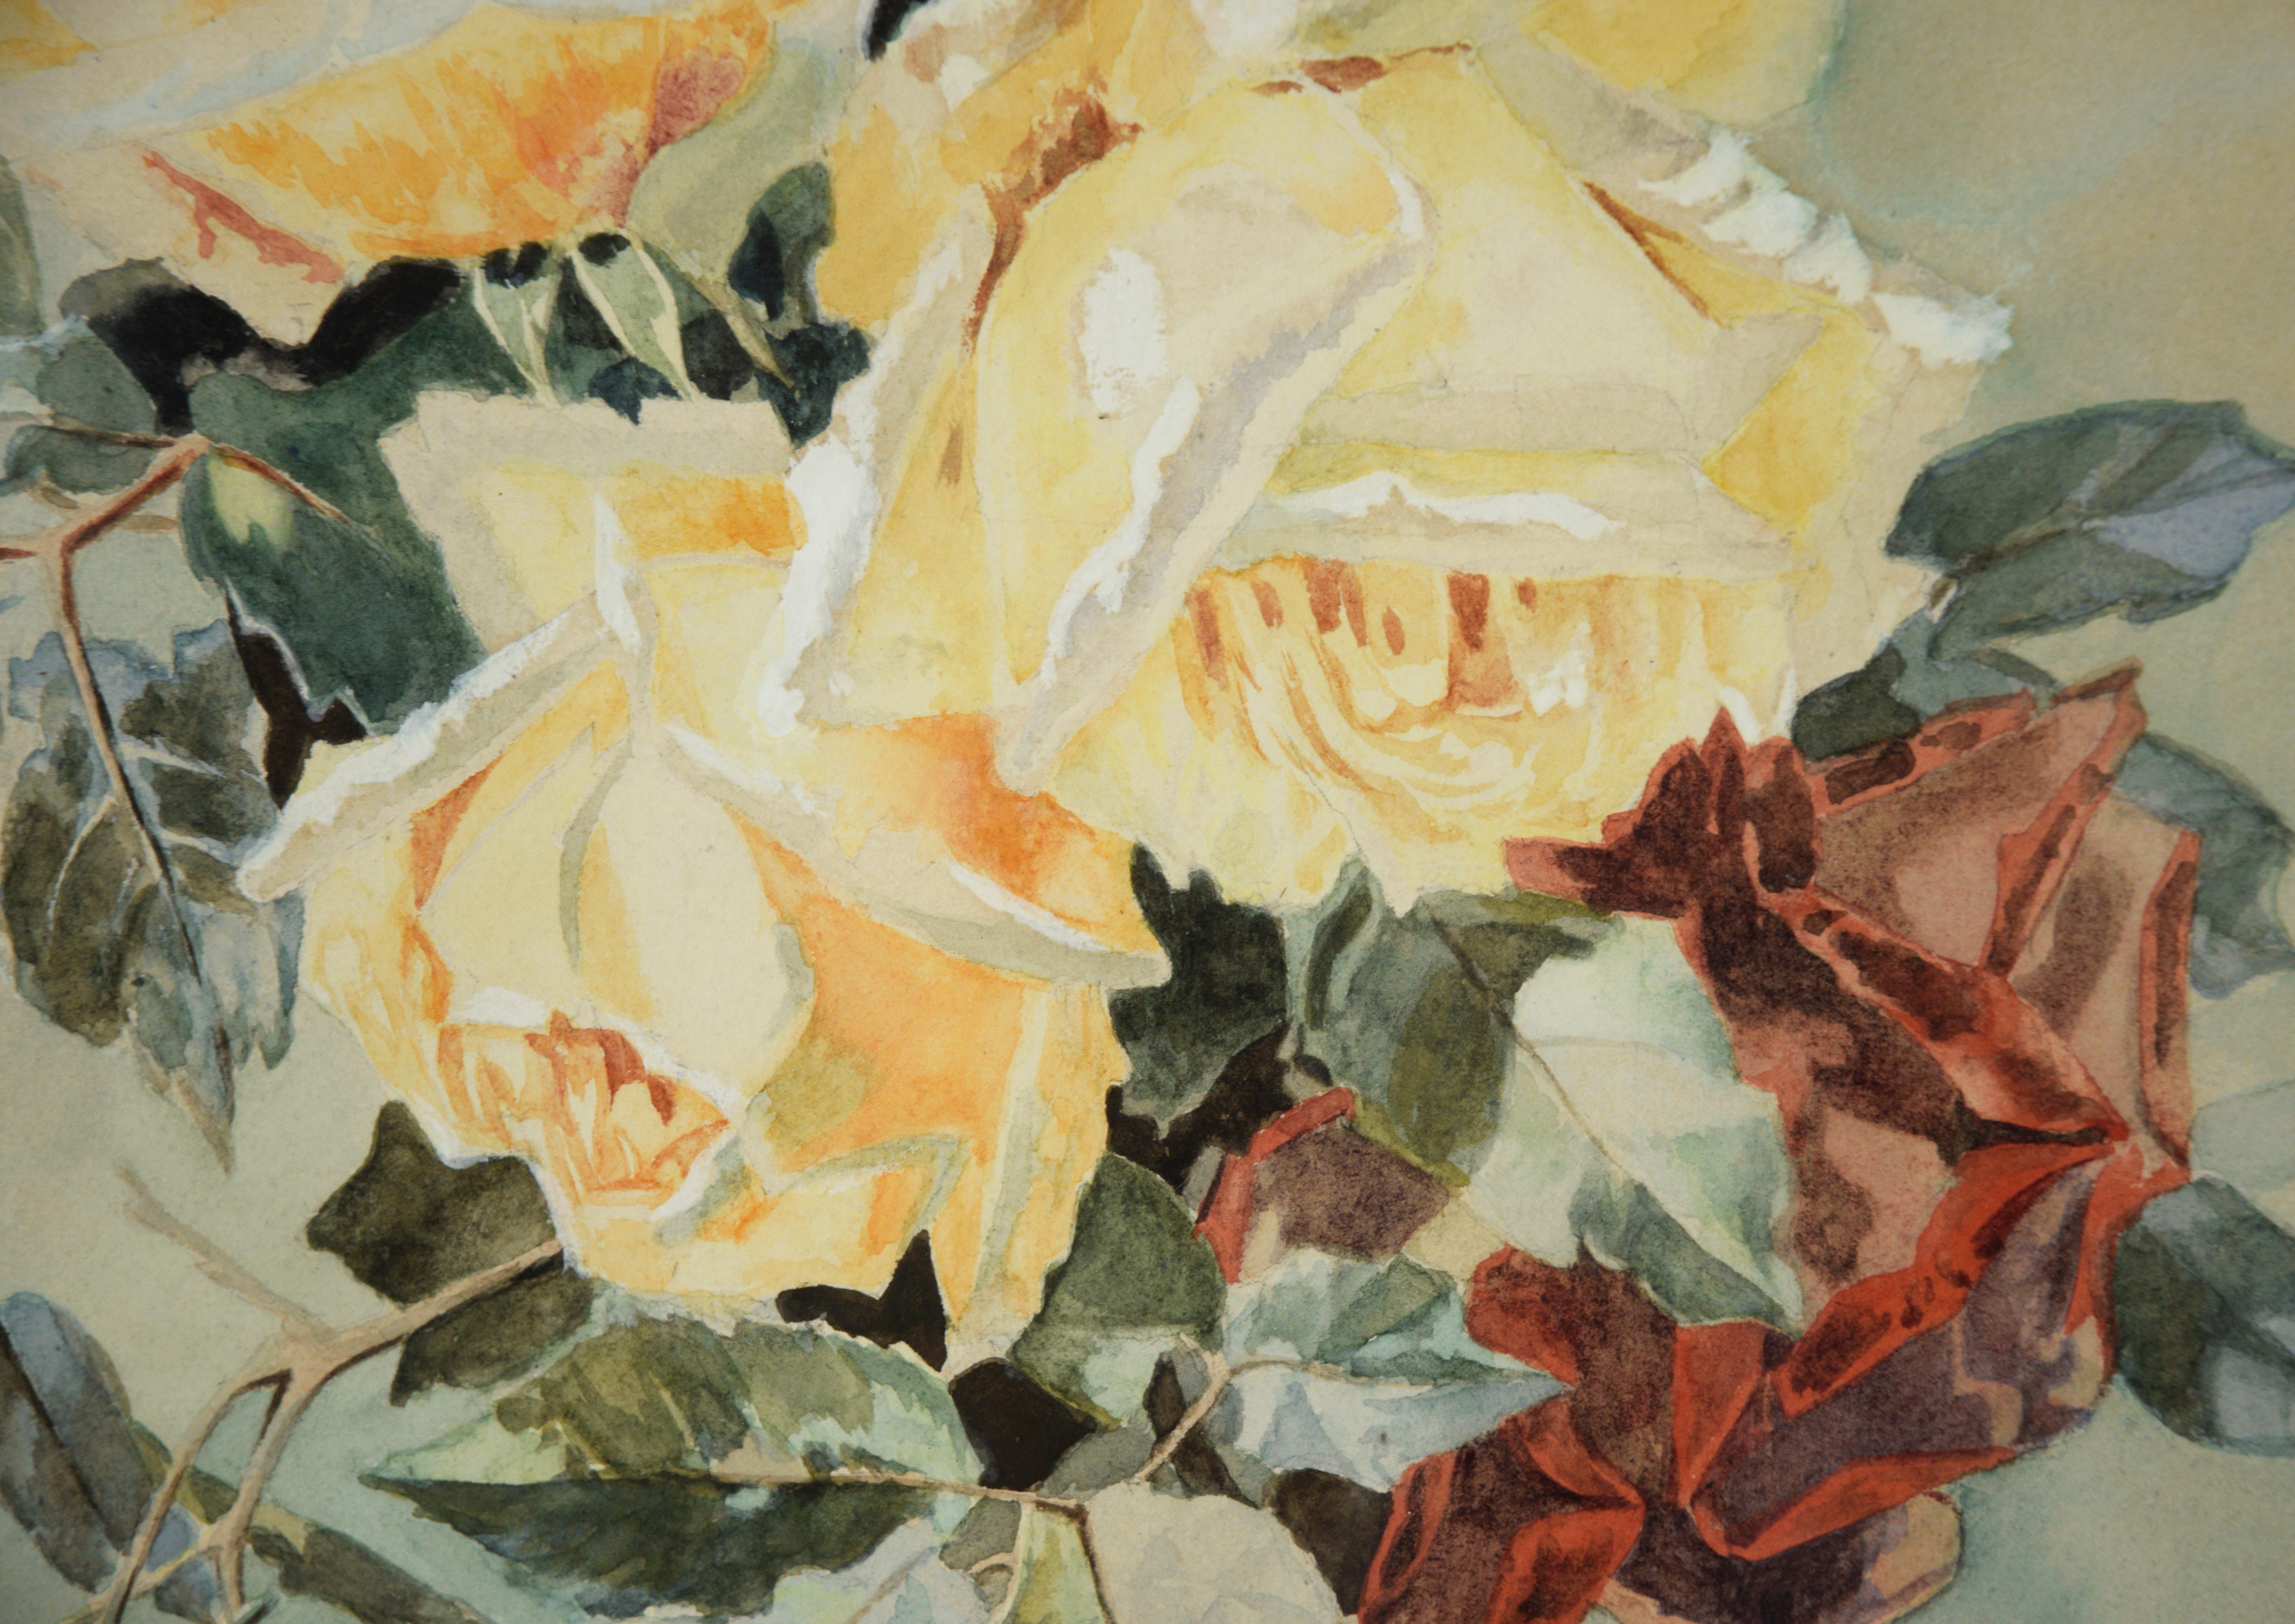 Nature morte au bouquet de roses jaunes - Aquarelle sur papier

Nature morte à l'aquarelle représentant un bouquet de roses jaunes entouré d'un fond vert. Trois roses jaunes constituent le point central, entourées de feuilles d'un vert éclatant. Les